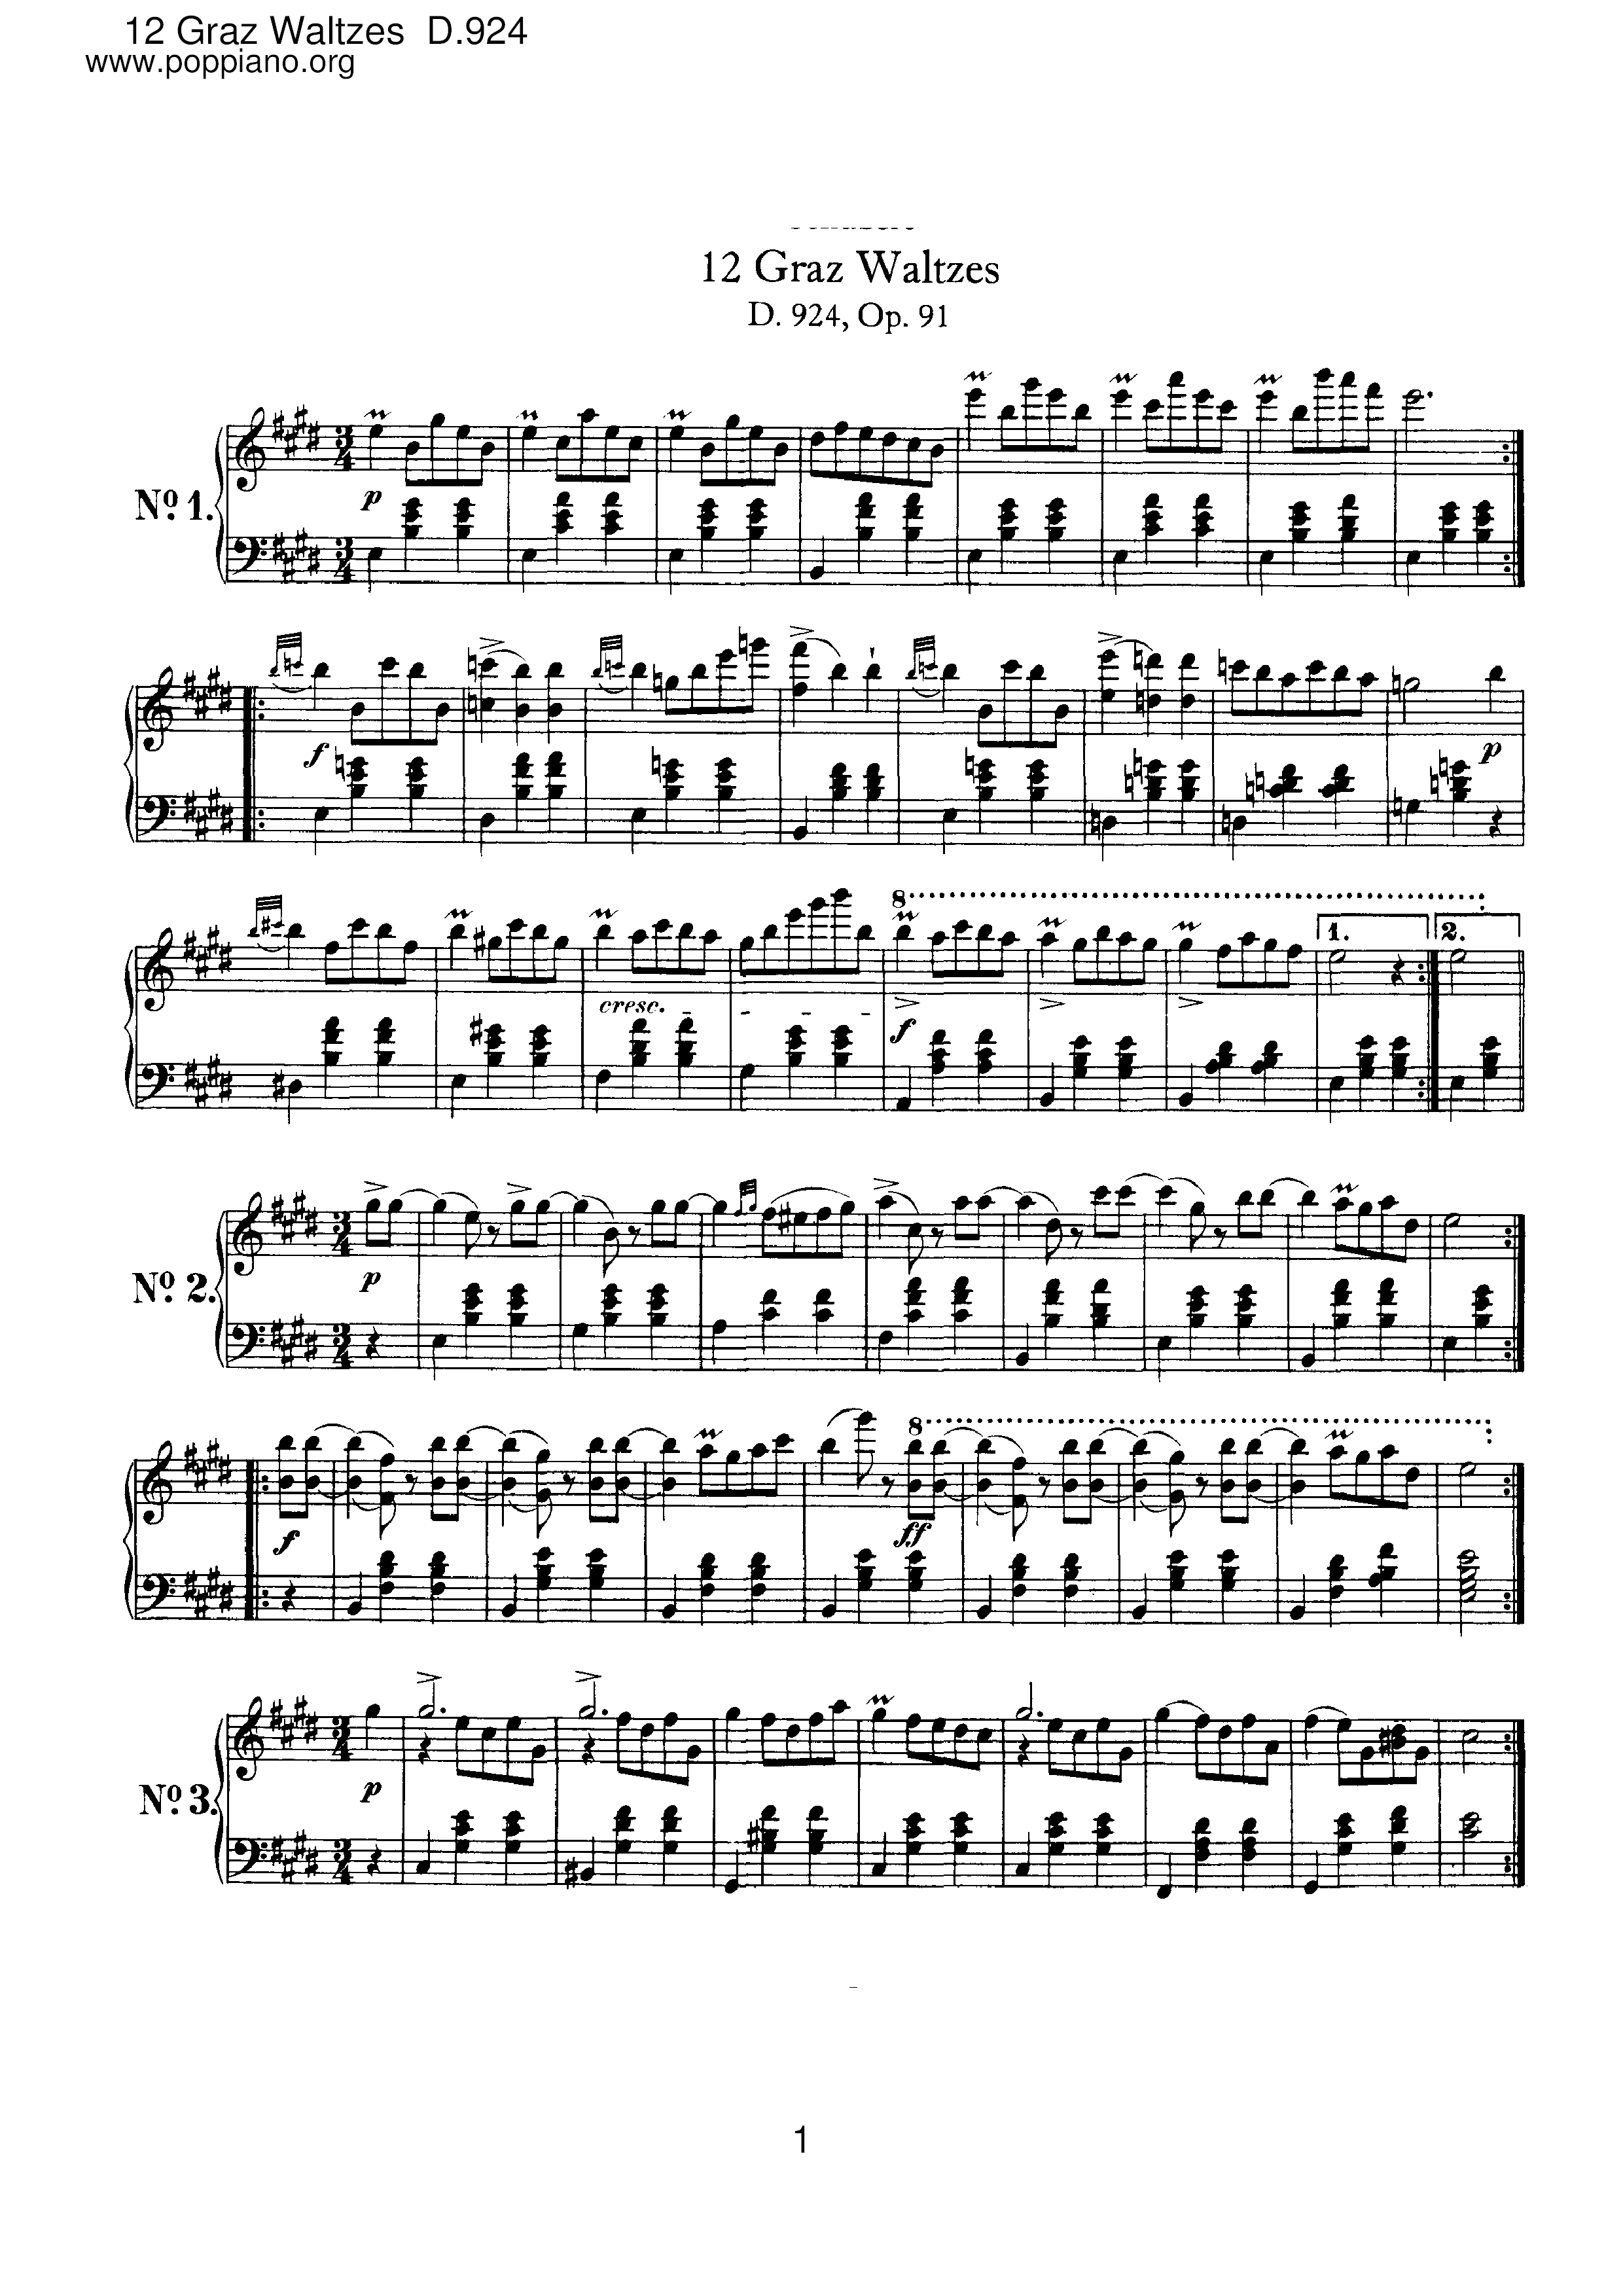 12 Graz Waltzes, D.924 (Op.91)琴譜